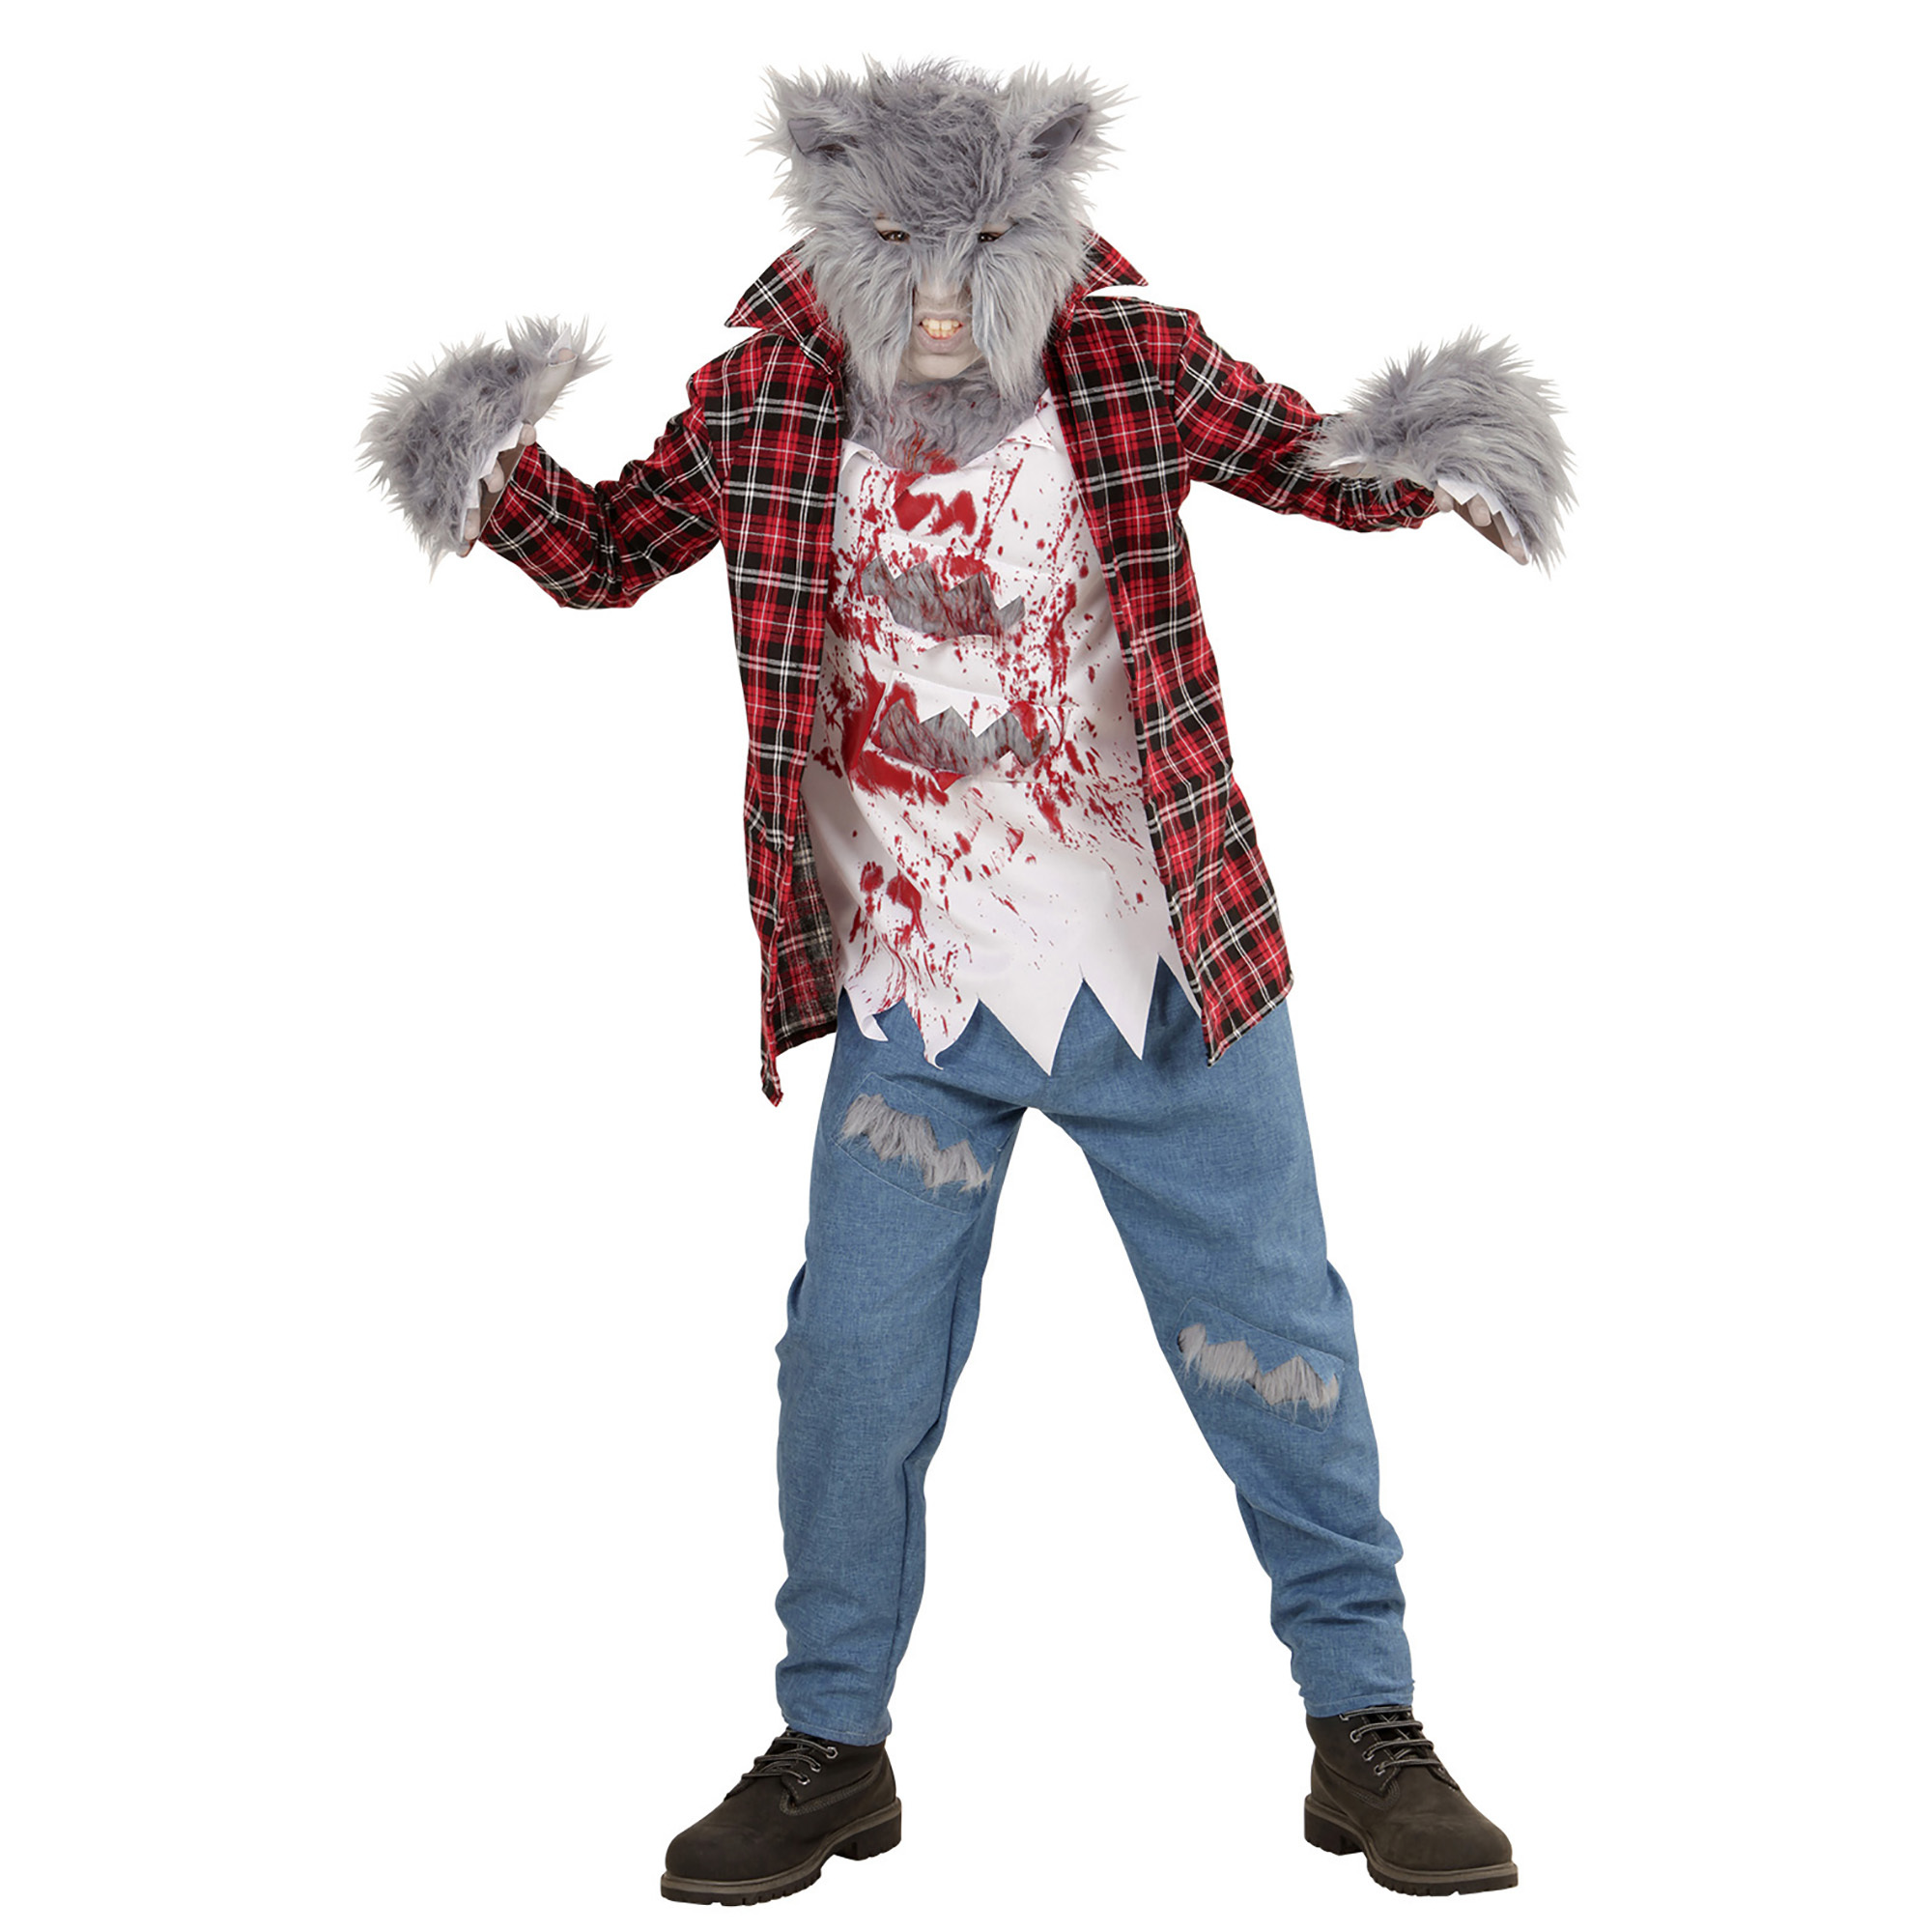 Scary weerwolven kostuum kind bij volle maan weerwolf.